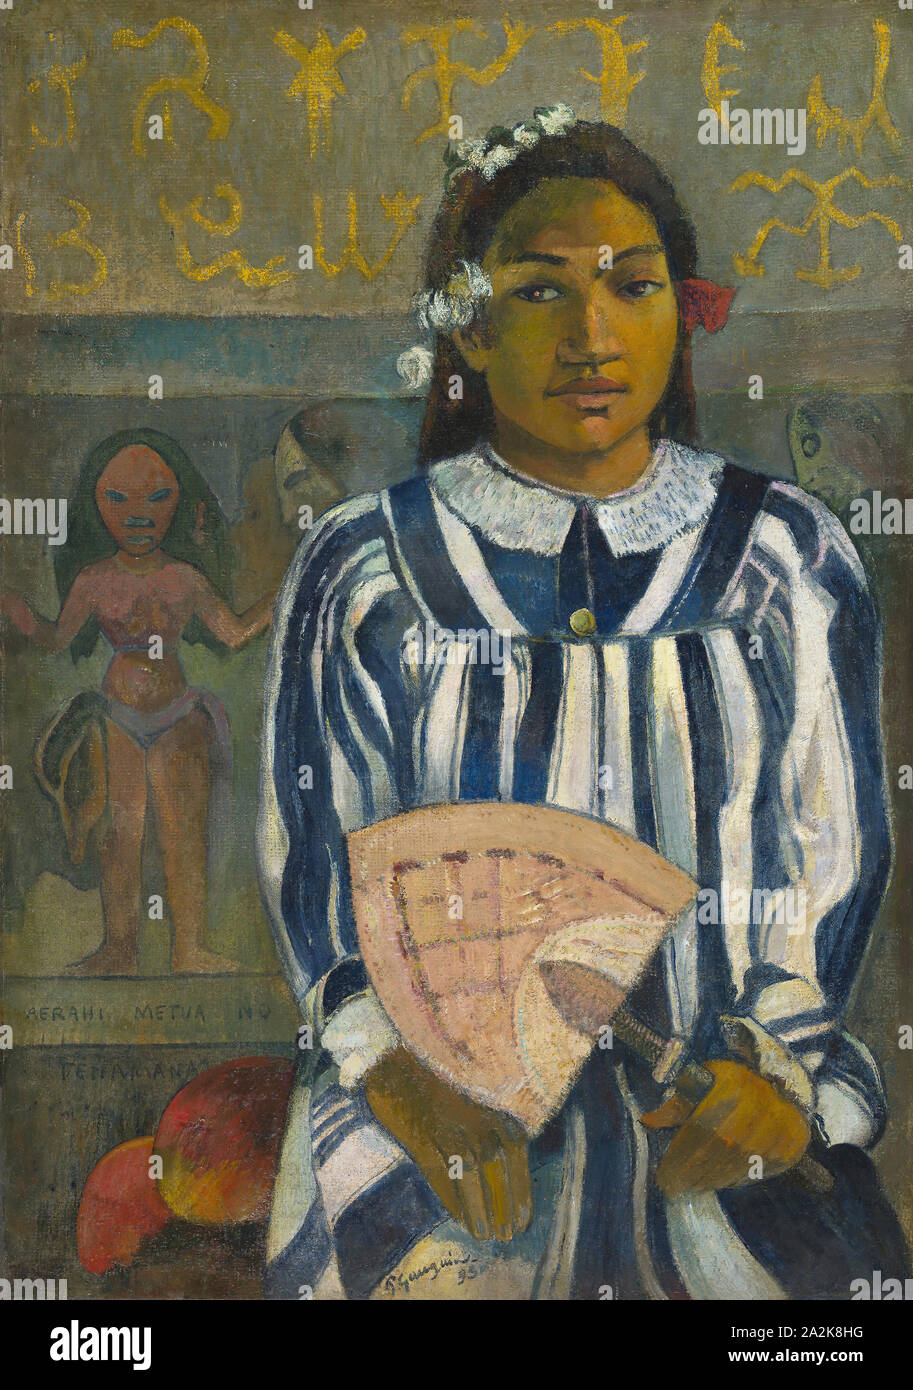 Merahi metua (Tehamana Tehamana n'a de nombreux parents ou les ancêtres de Tehamana, 1893), Paul Gauguin, Français, France, 1848-1903, huile sur toile de jute, 75 × 53 cm (29 1/2 x 20 7/8 po Banque D'Images